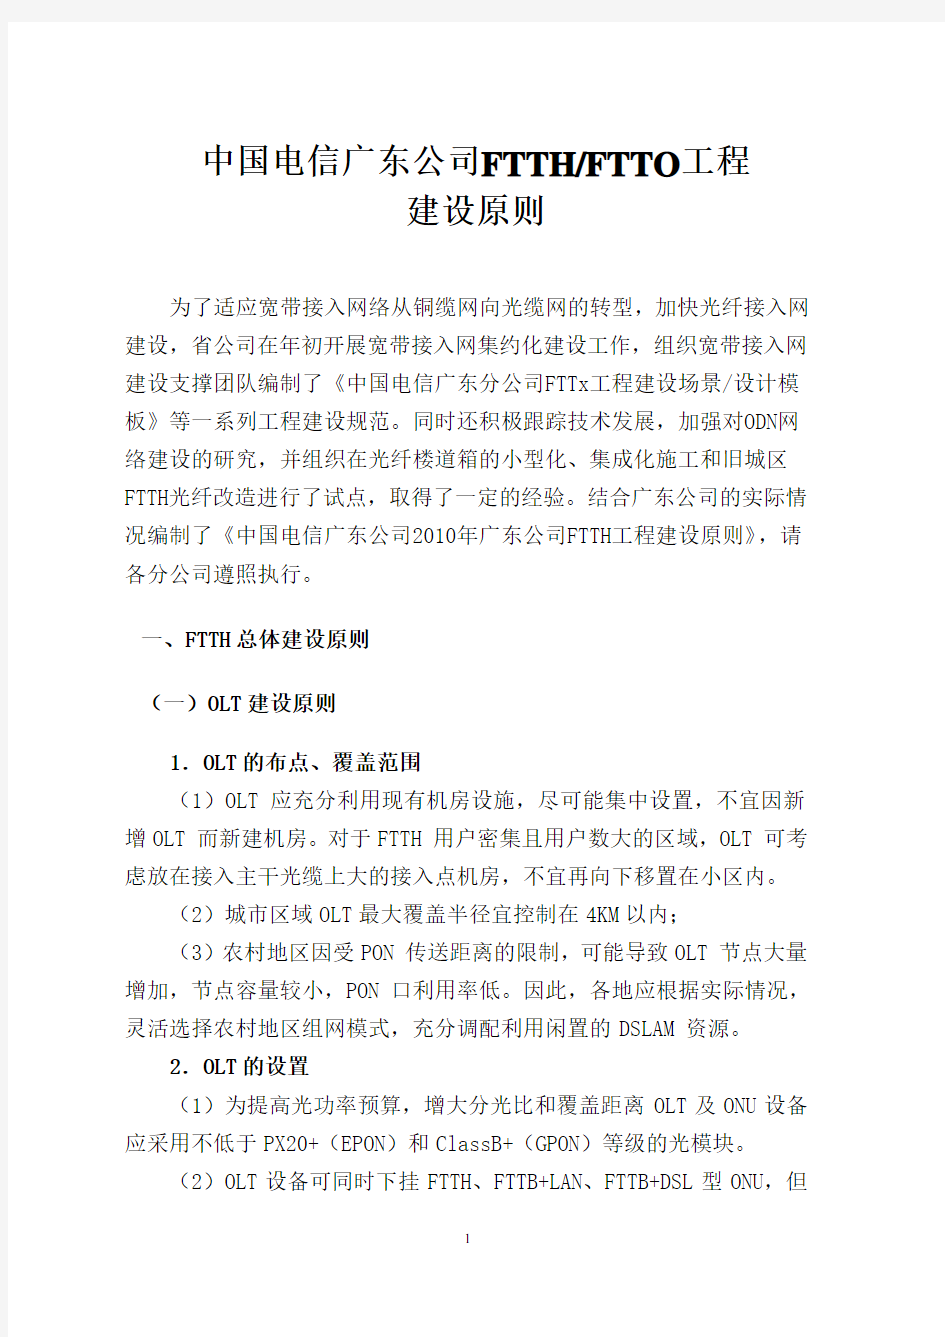 中国电信广东公司FTTH建设指导原则20101122(公文形式)